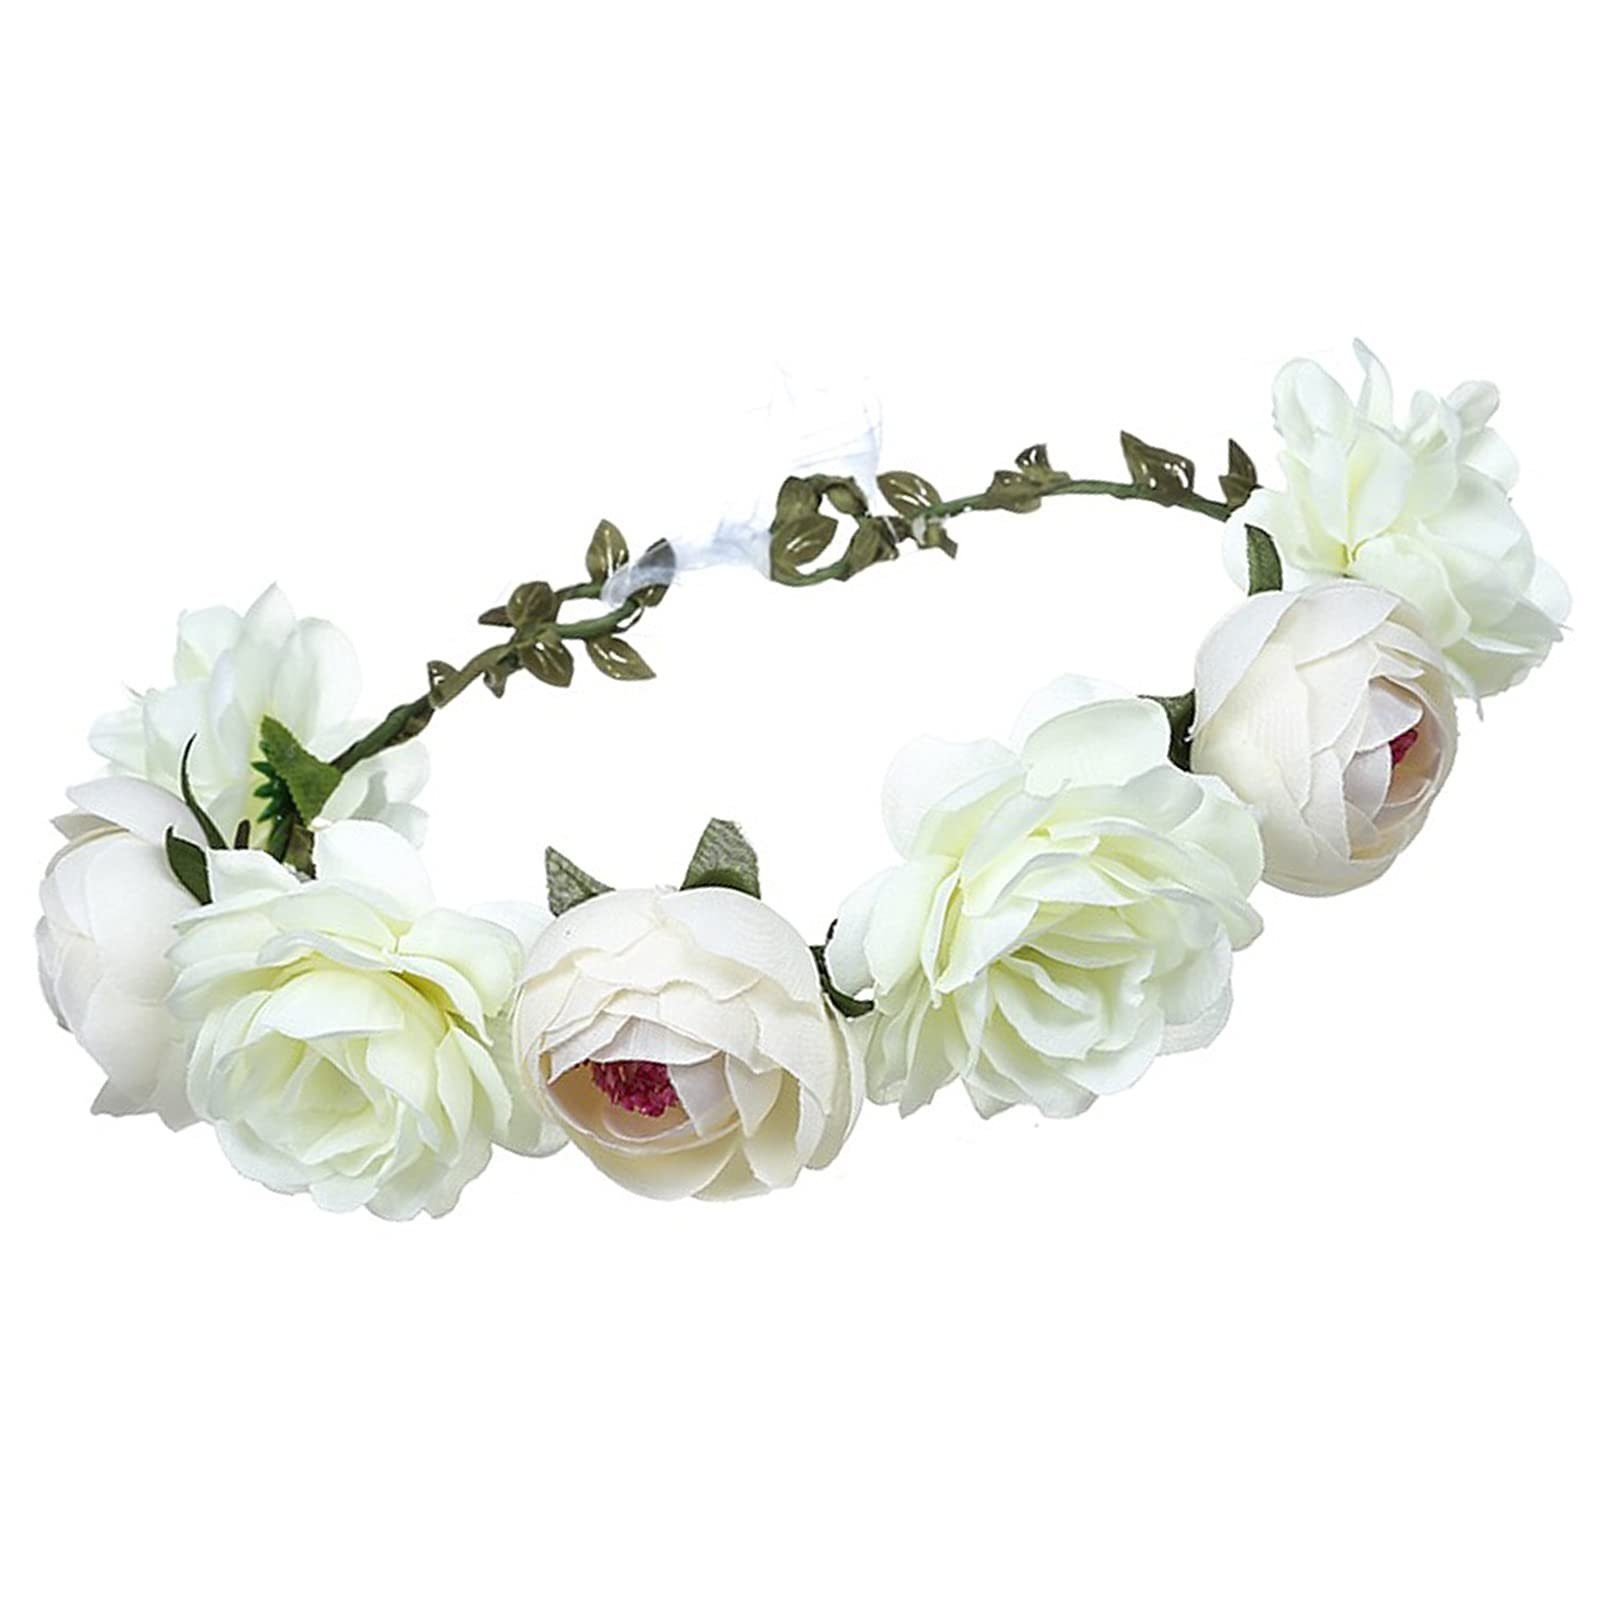 POCHUMIDUU Haargummi Blumenkranz Haar Blumen Stirnband Floral Garland Krone Haarreif, Für Hochzeit Zeremonie Party Festival Weiß